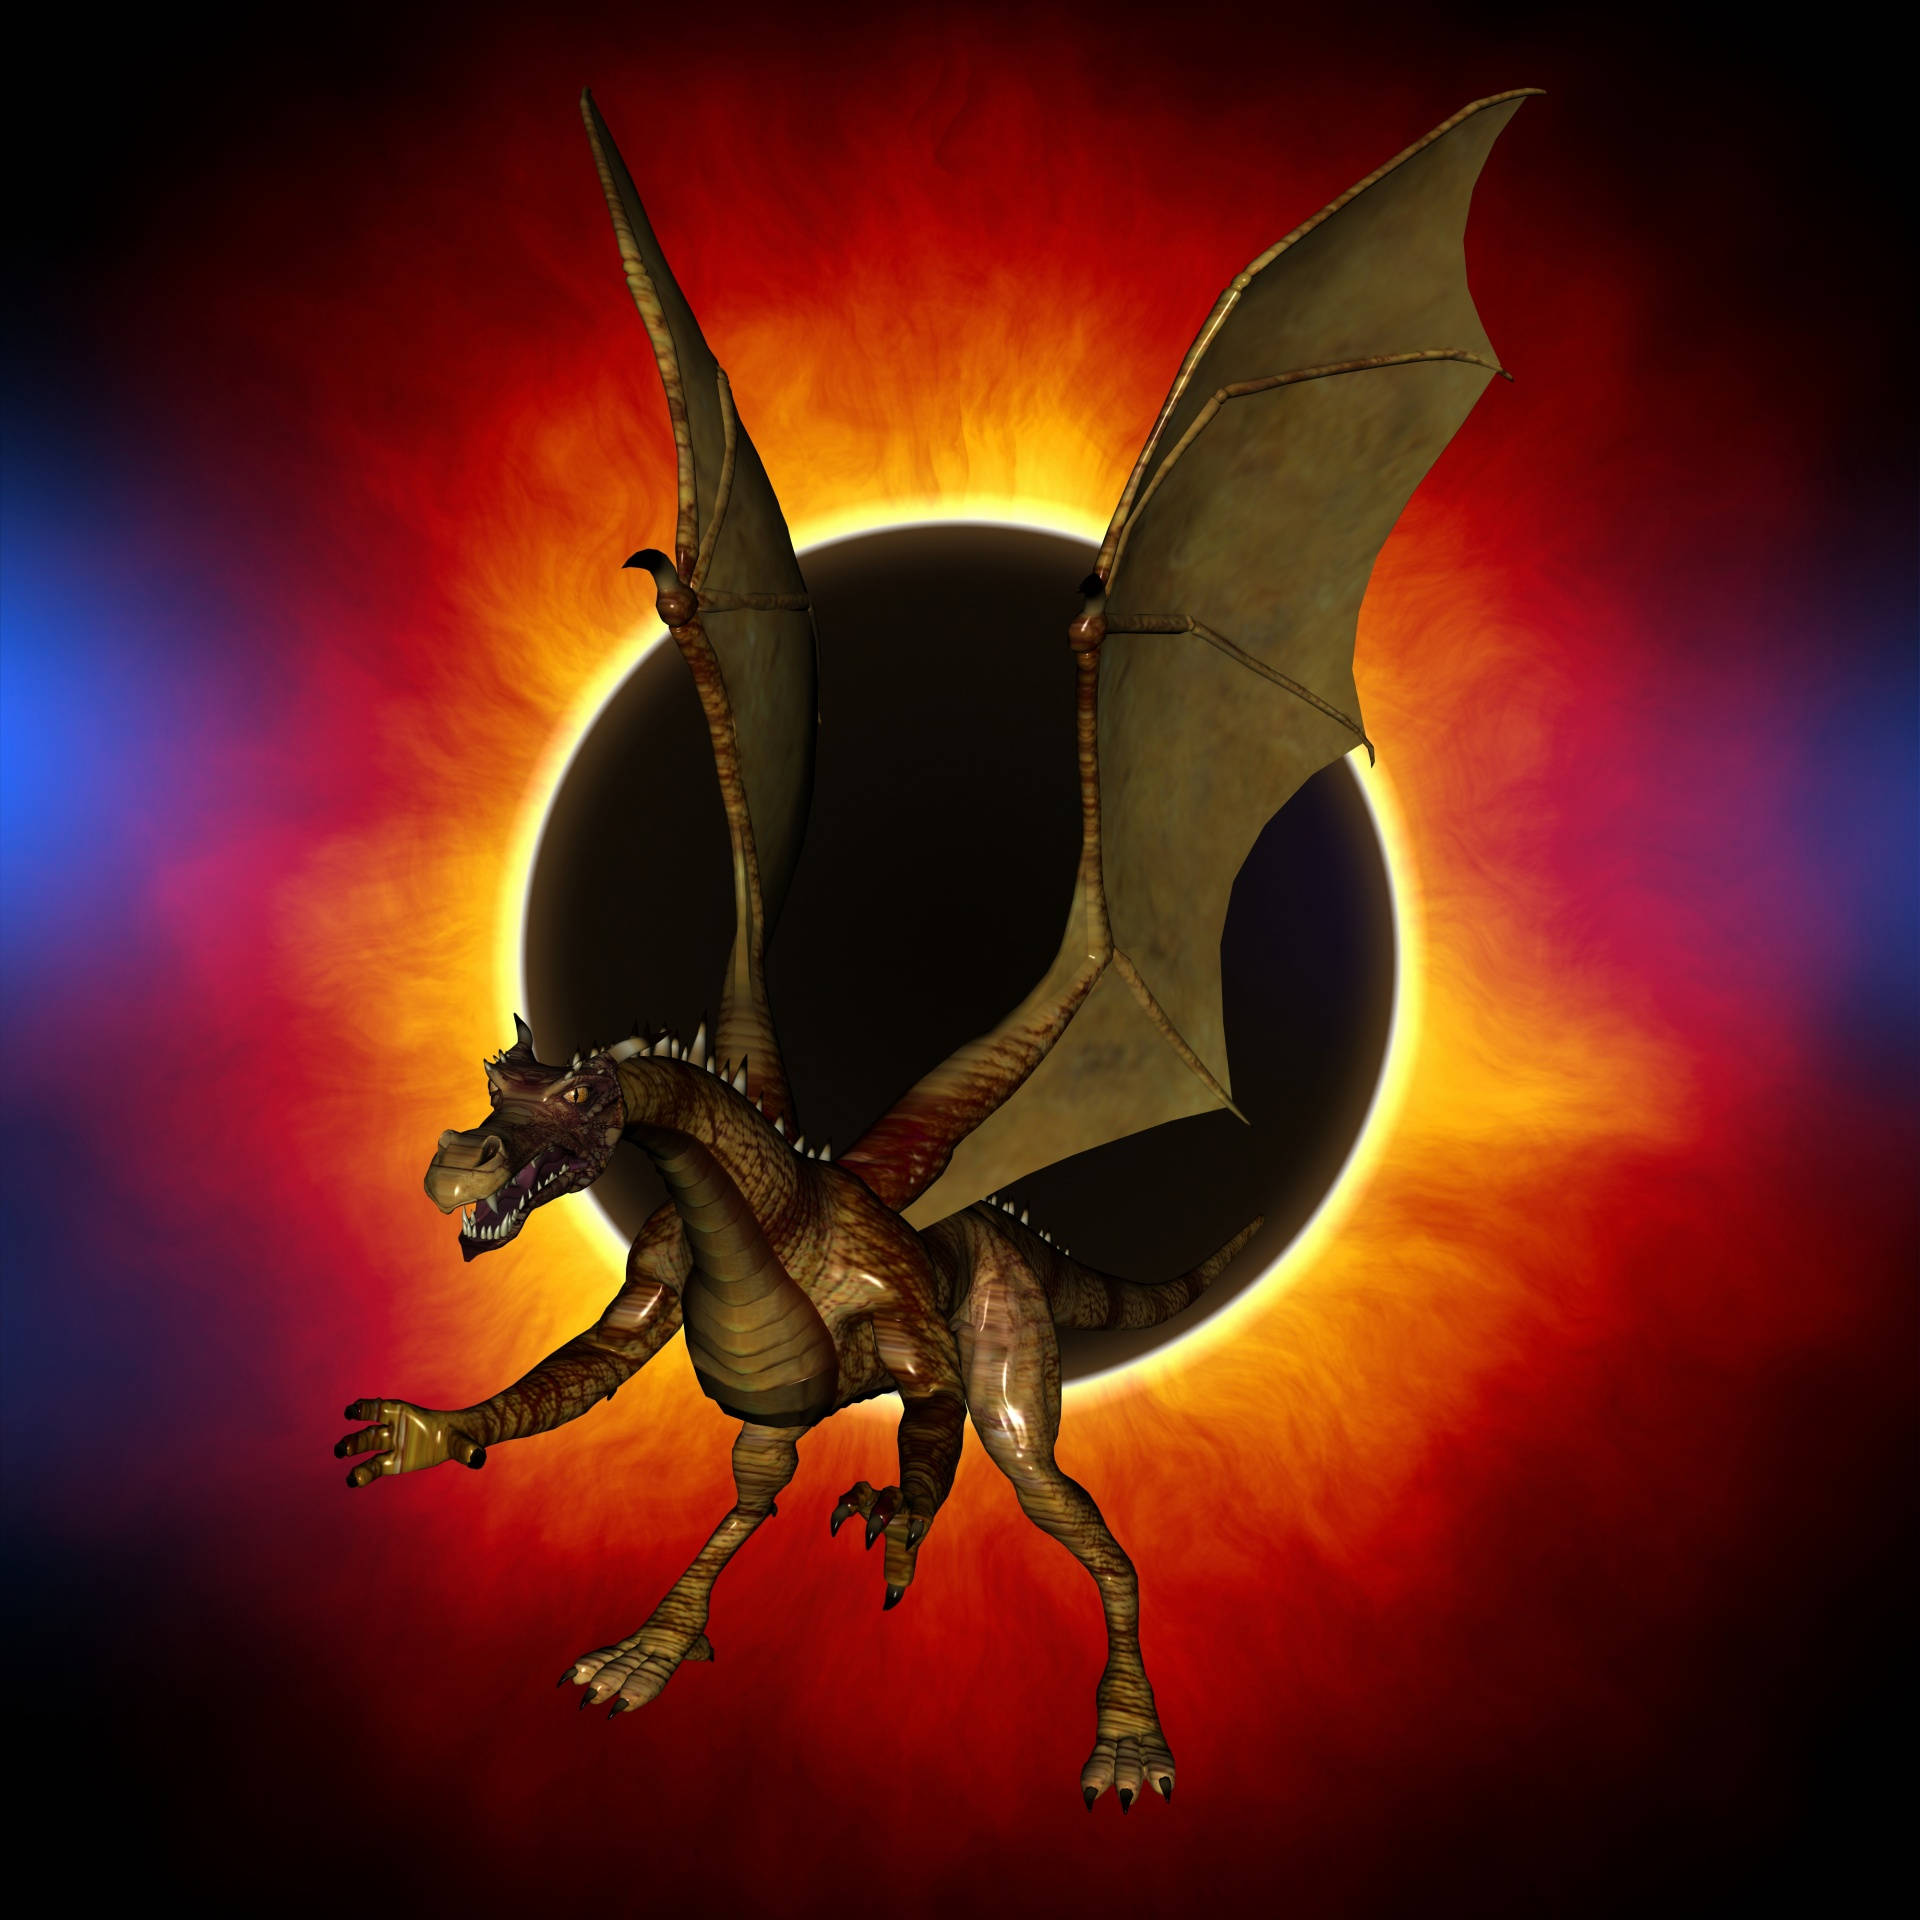 Eclipsedel Dragón Dorado Fondo de pantalla